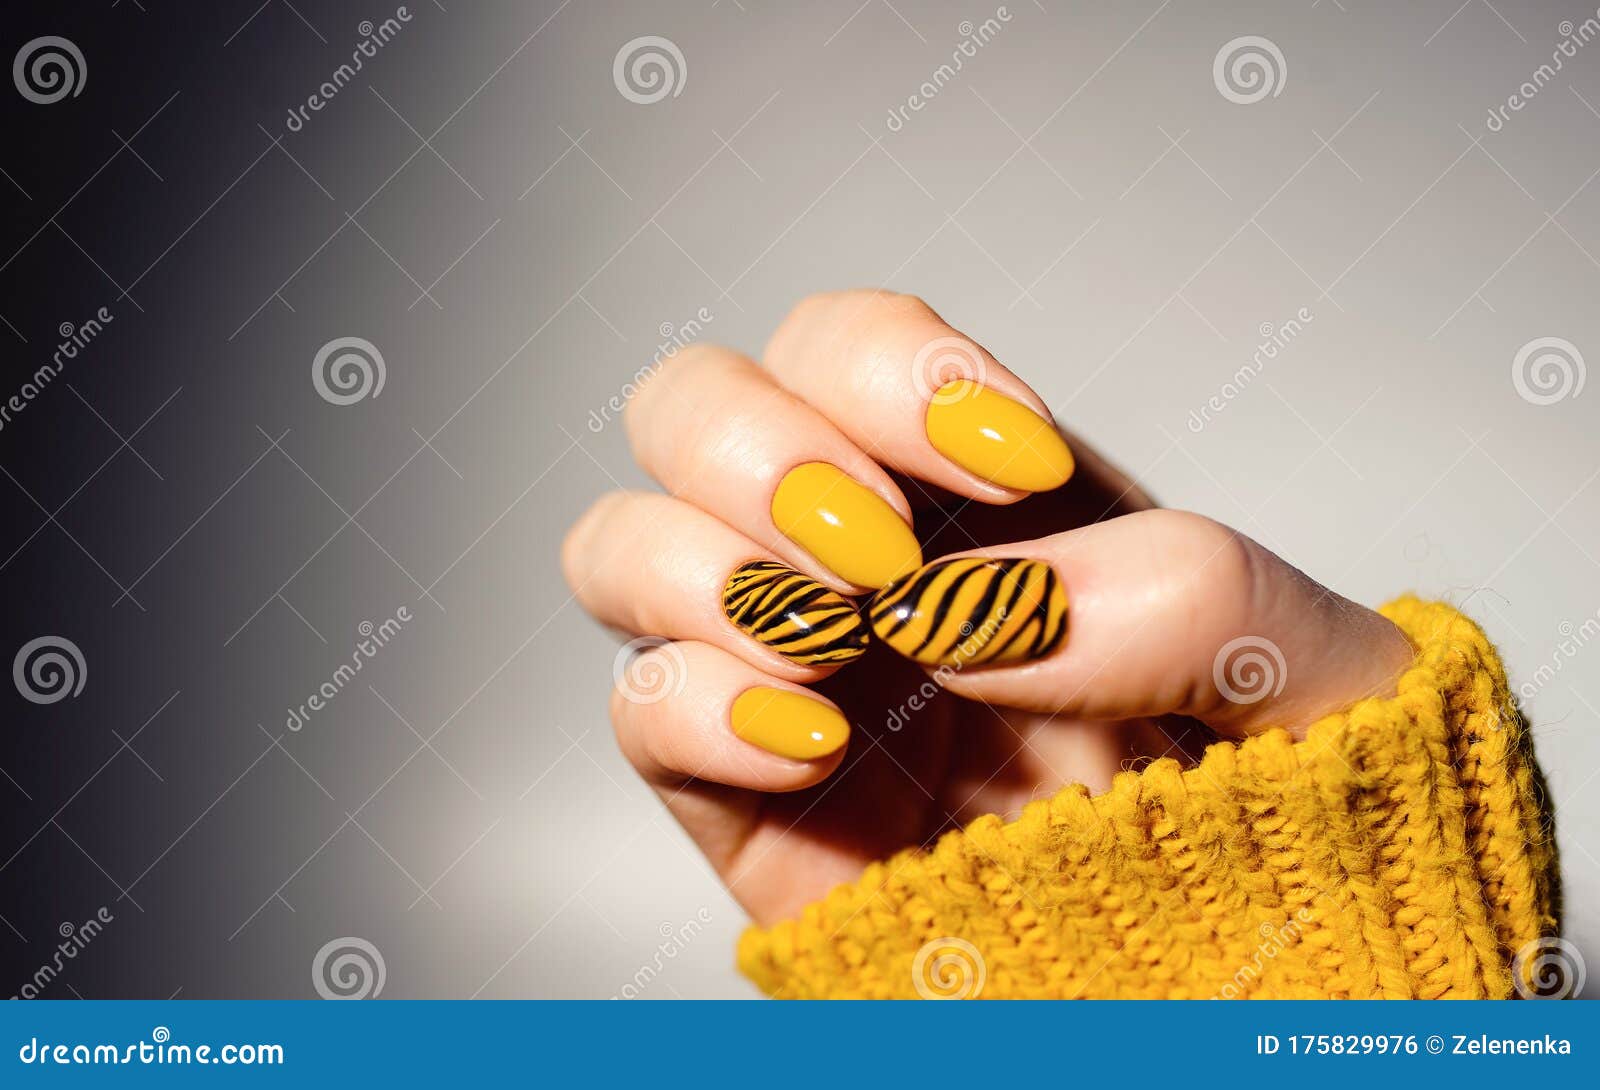 Thiết kế móng tay hoa hướng dương vàng sáng được cập nhật đến năm 2024 sẽ khiến bạn cảm thấy thật tươi vui và năng động. Với màu vàng rực rỡ như ánh mặt trời, thiết kế này chắc chắn sẽ mang đến cho bạn cảm giác tươi mới và rạng rỡ. Hãy xem hình ảnh liên quan ngay bây giờ và thư giãn với vẻ đẹp sống động của hoa hướng dương trên móng tay của bạn.